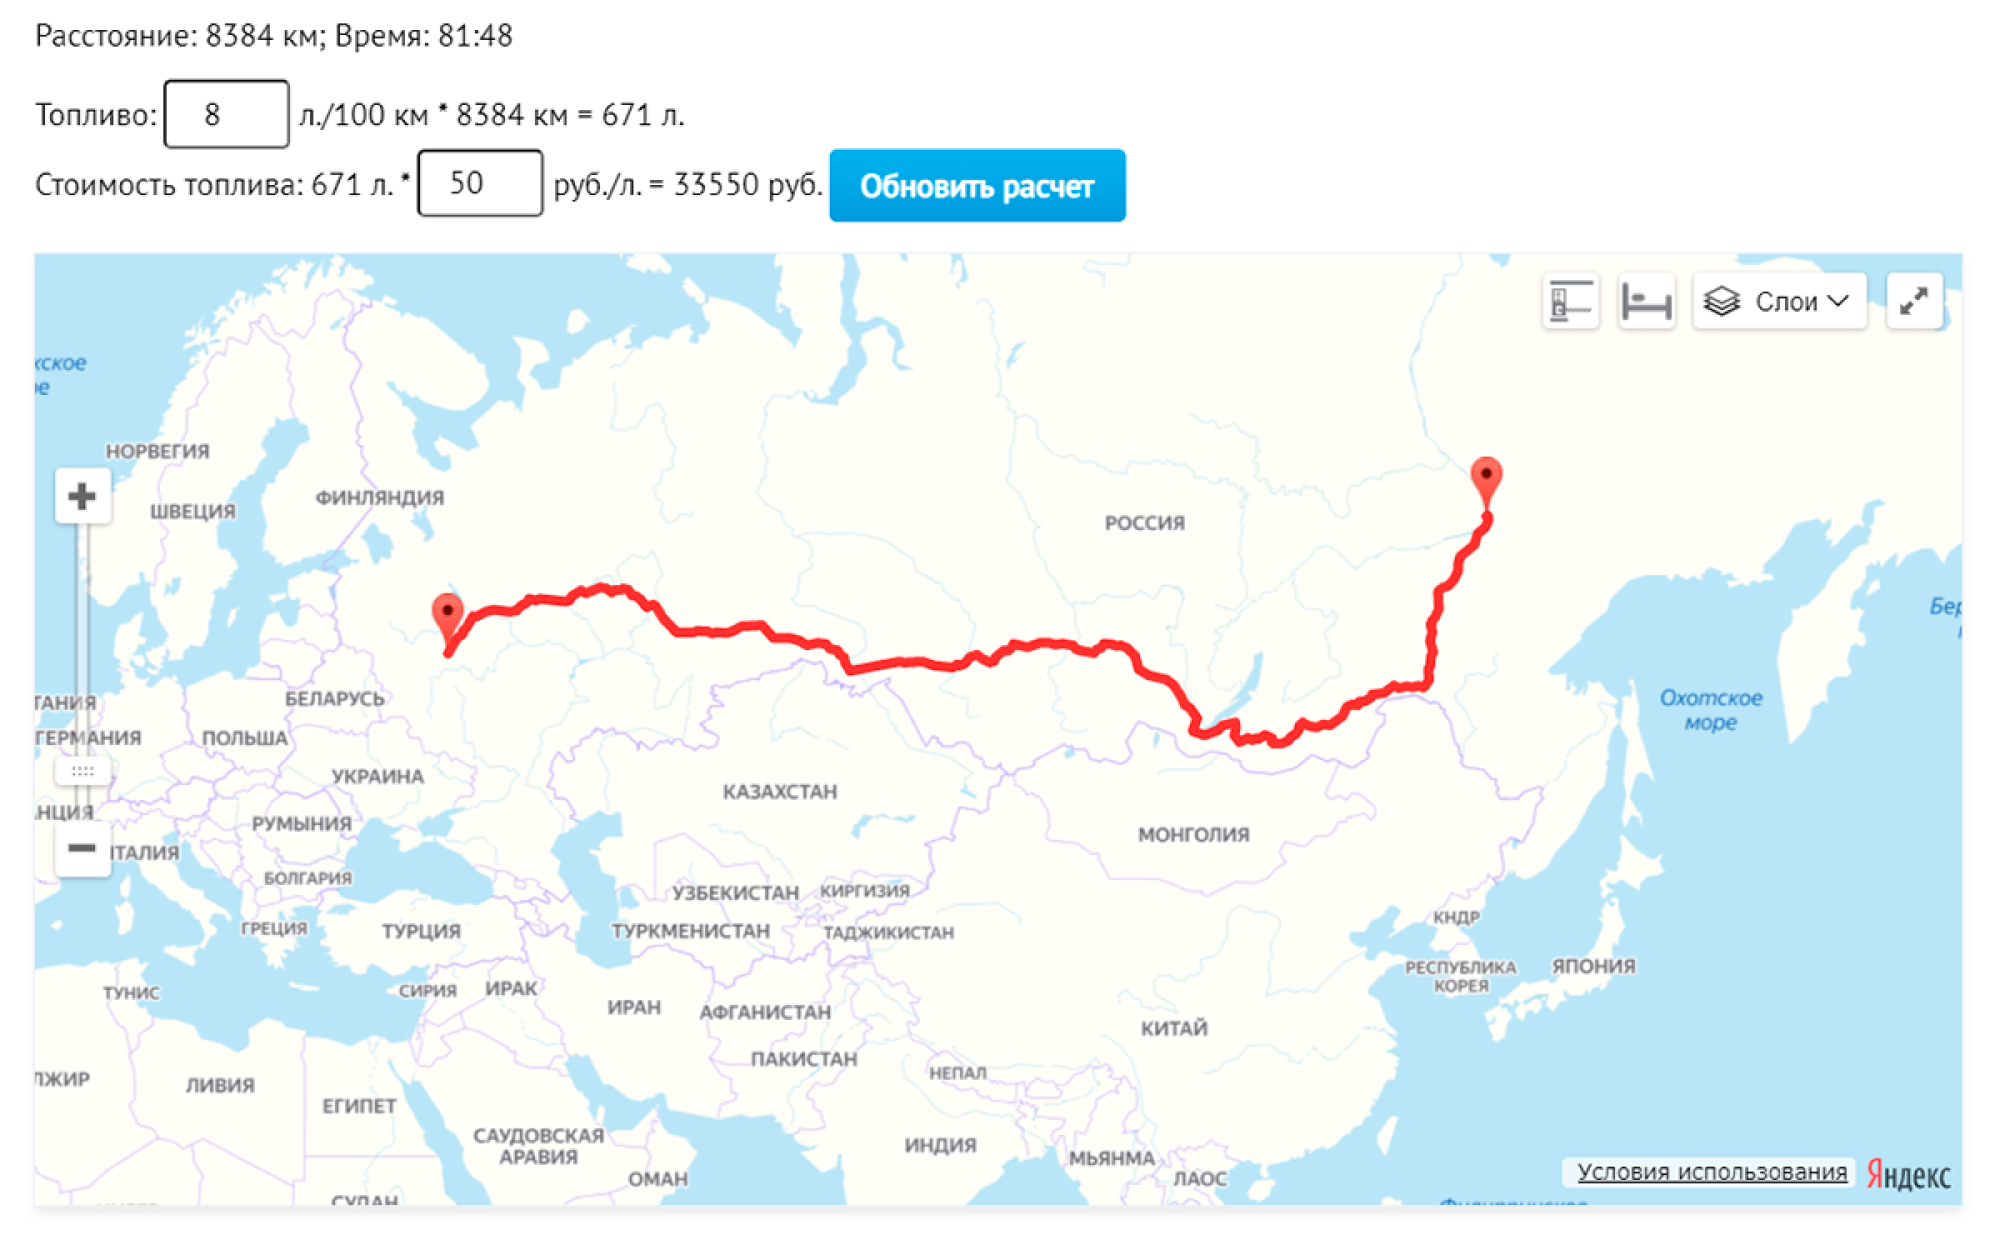 Сколько времени лететь якутск москва